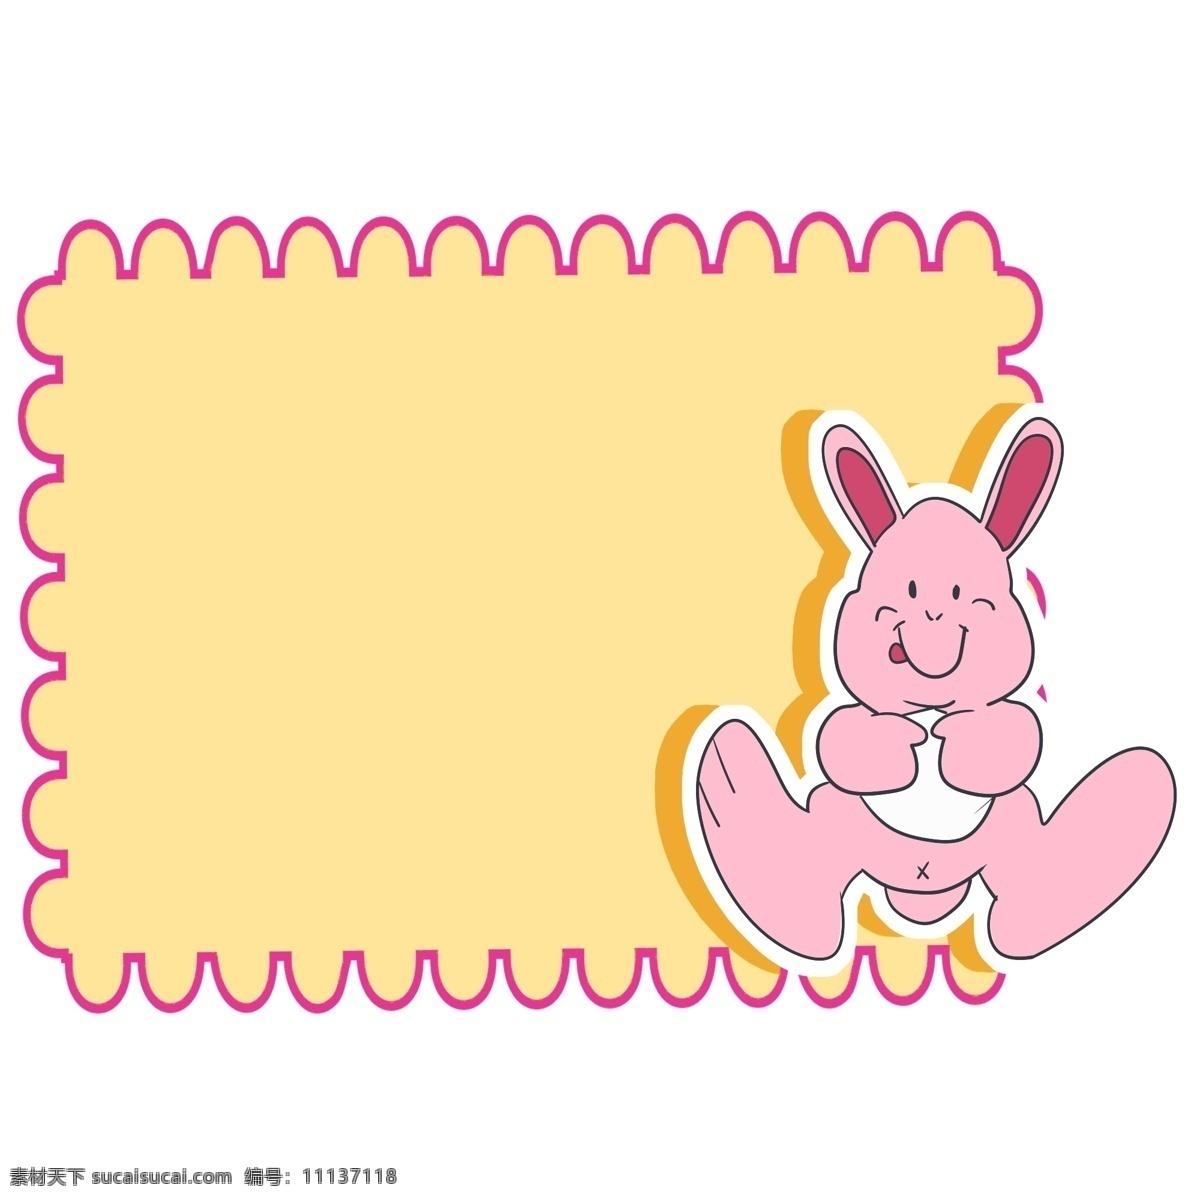 可爱 兔子 边框 插画 可爱的边框 手绘边框 卡通边框 边框装饰 立体边框 动物边框 边框插画 可爱的小兔子